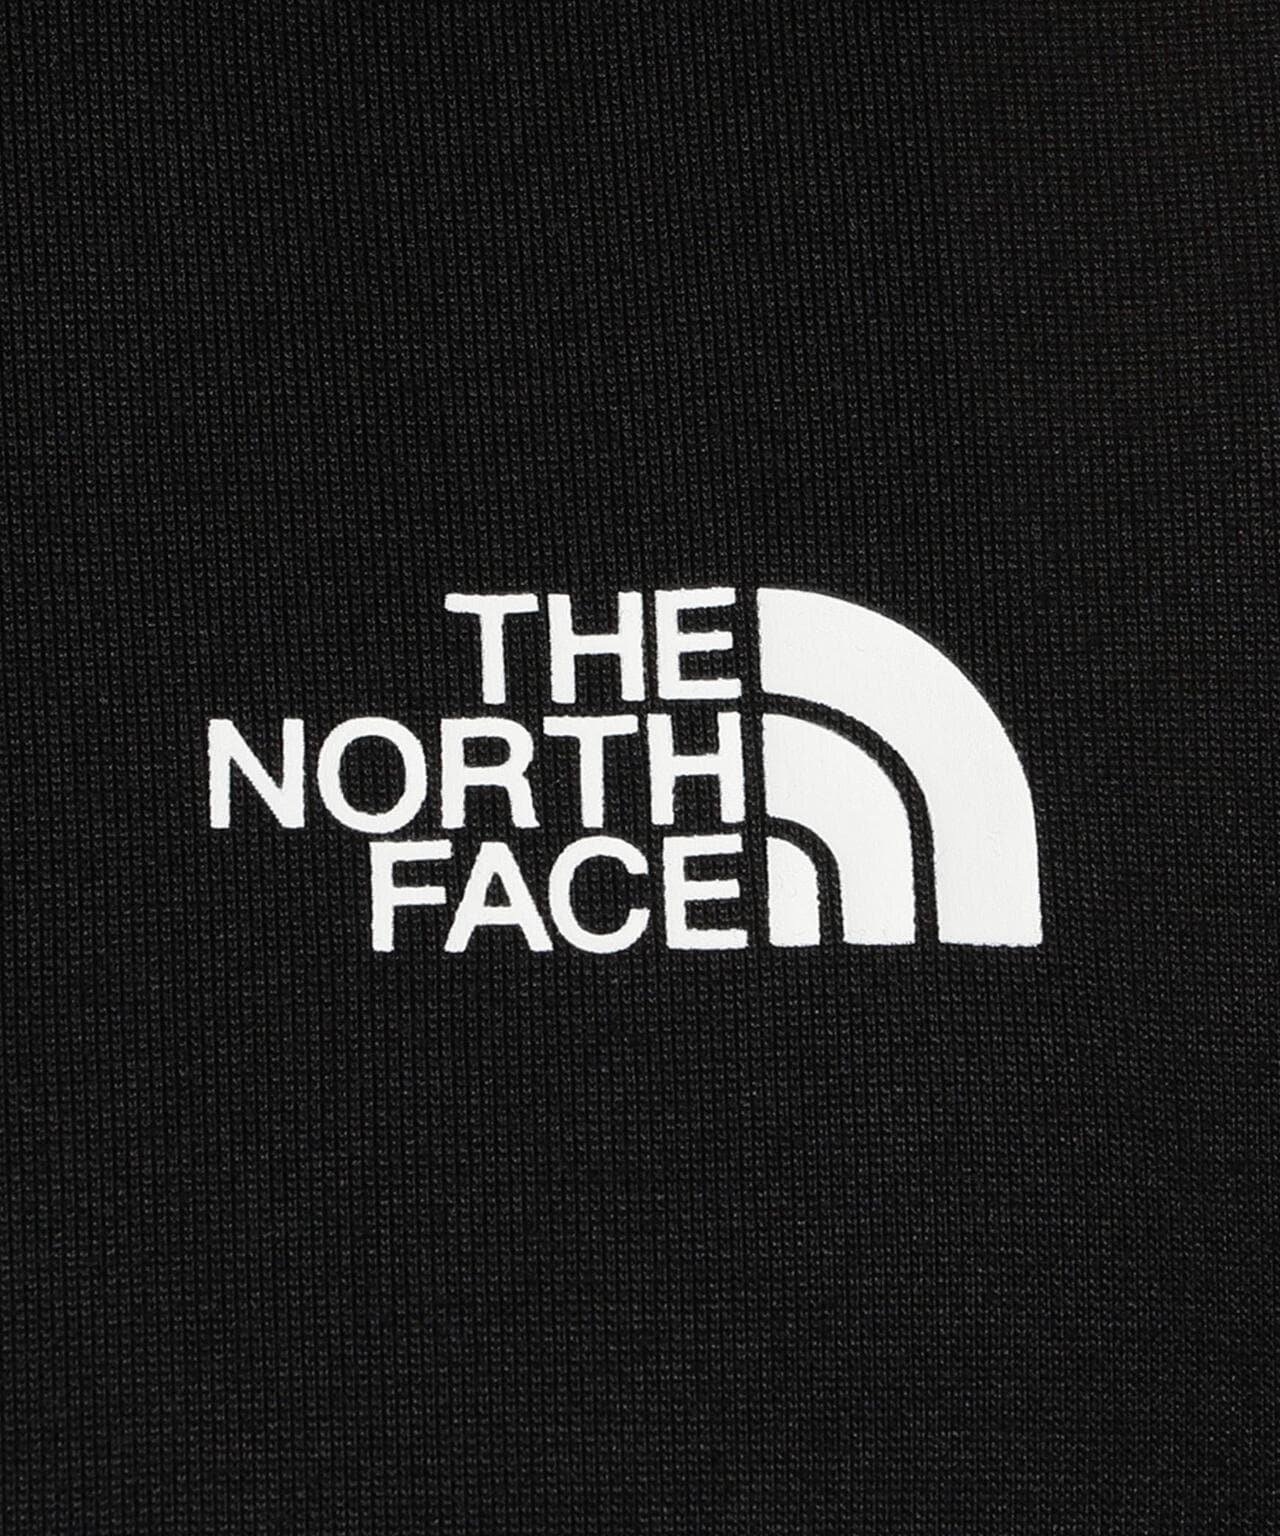 THE NORTH FACE/ザ ノースフェイス/SS Square Camofluge Tee/スクエア カモフラージュ Tシャツ